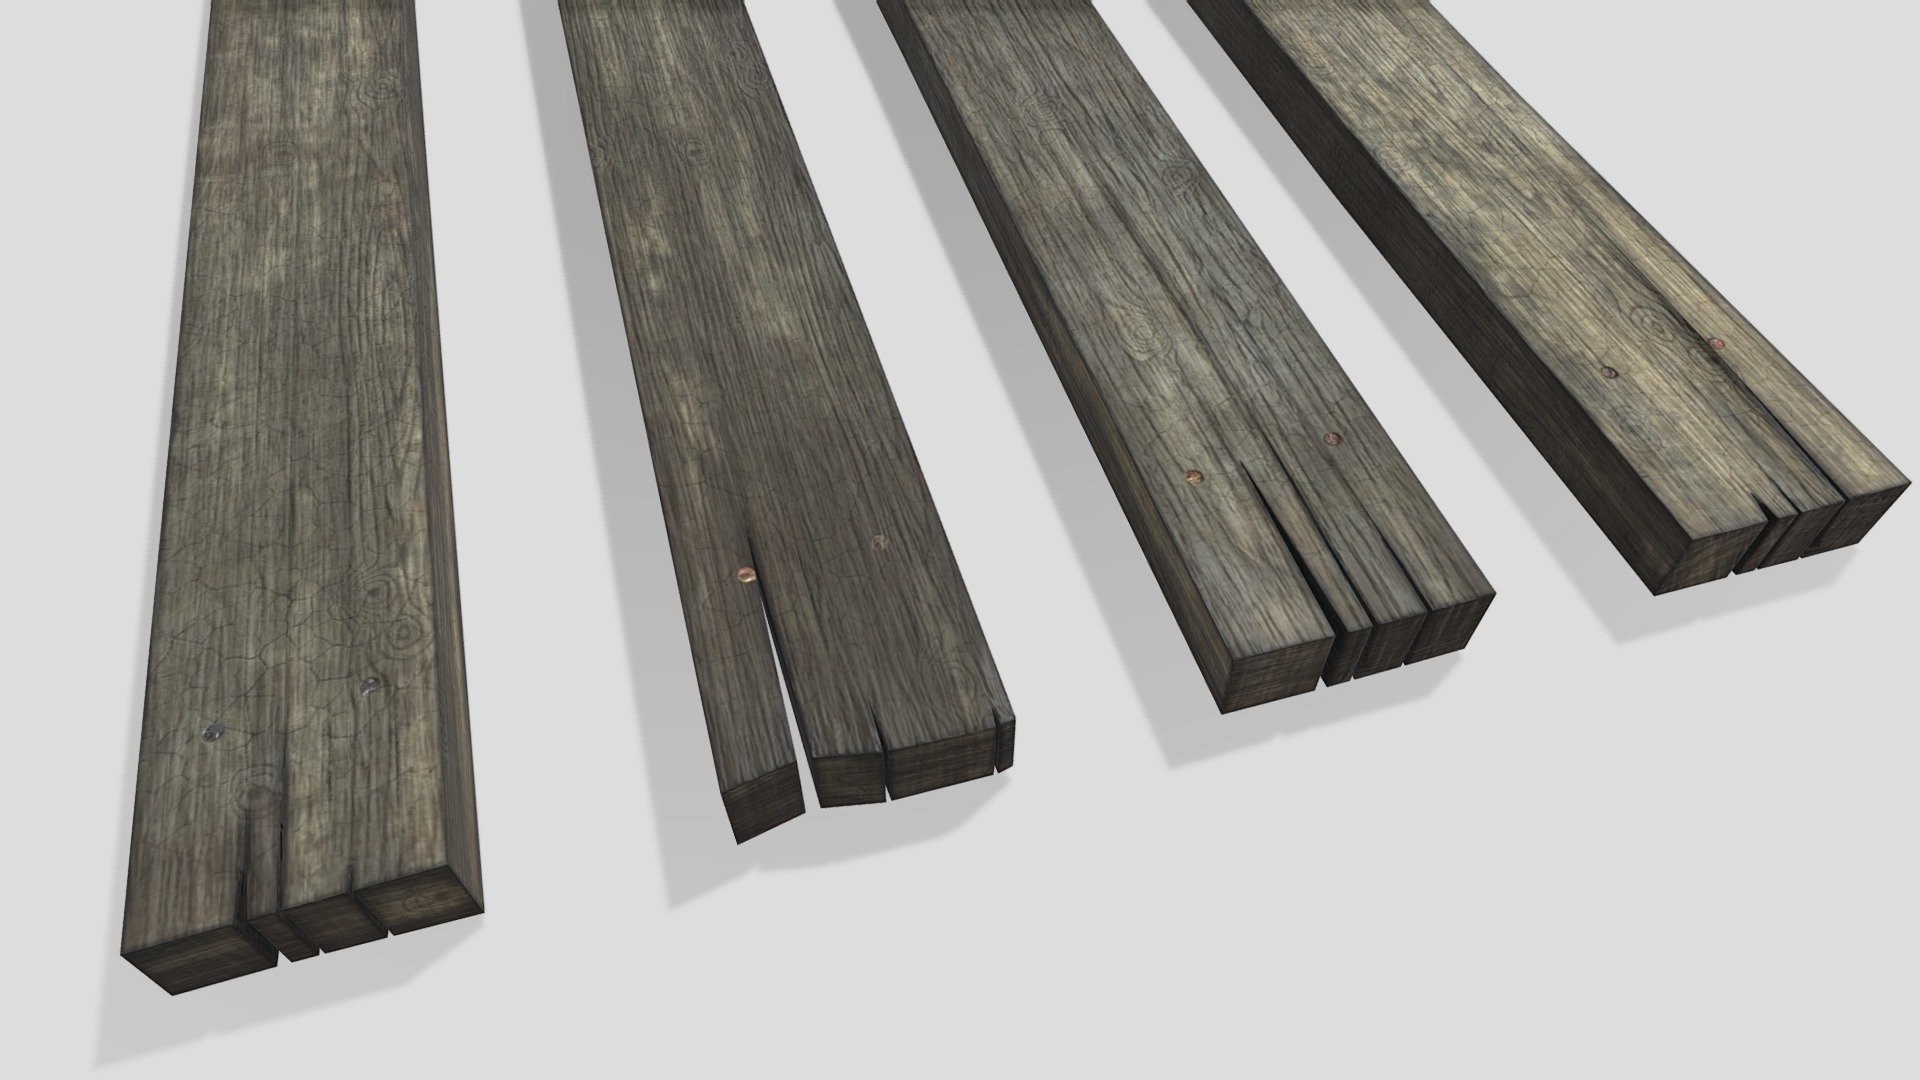 Ensemble de planches en bois usées.
Worn out wood planks set.

PBR, low-poly, 2K 3d model